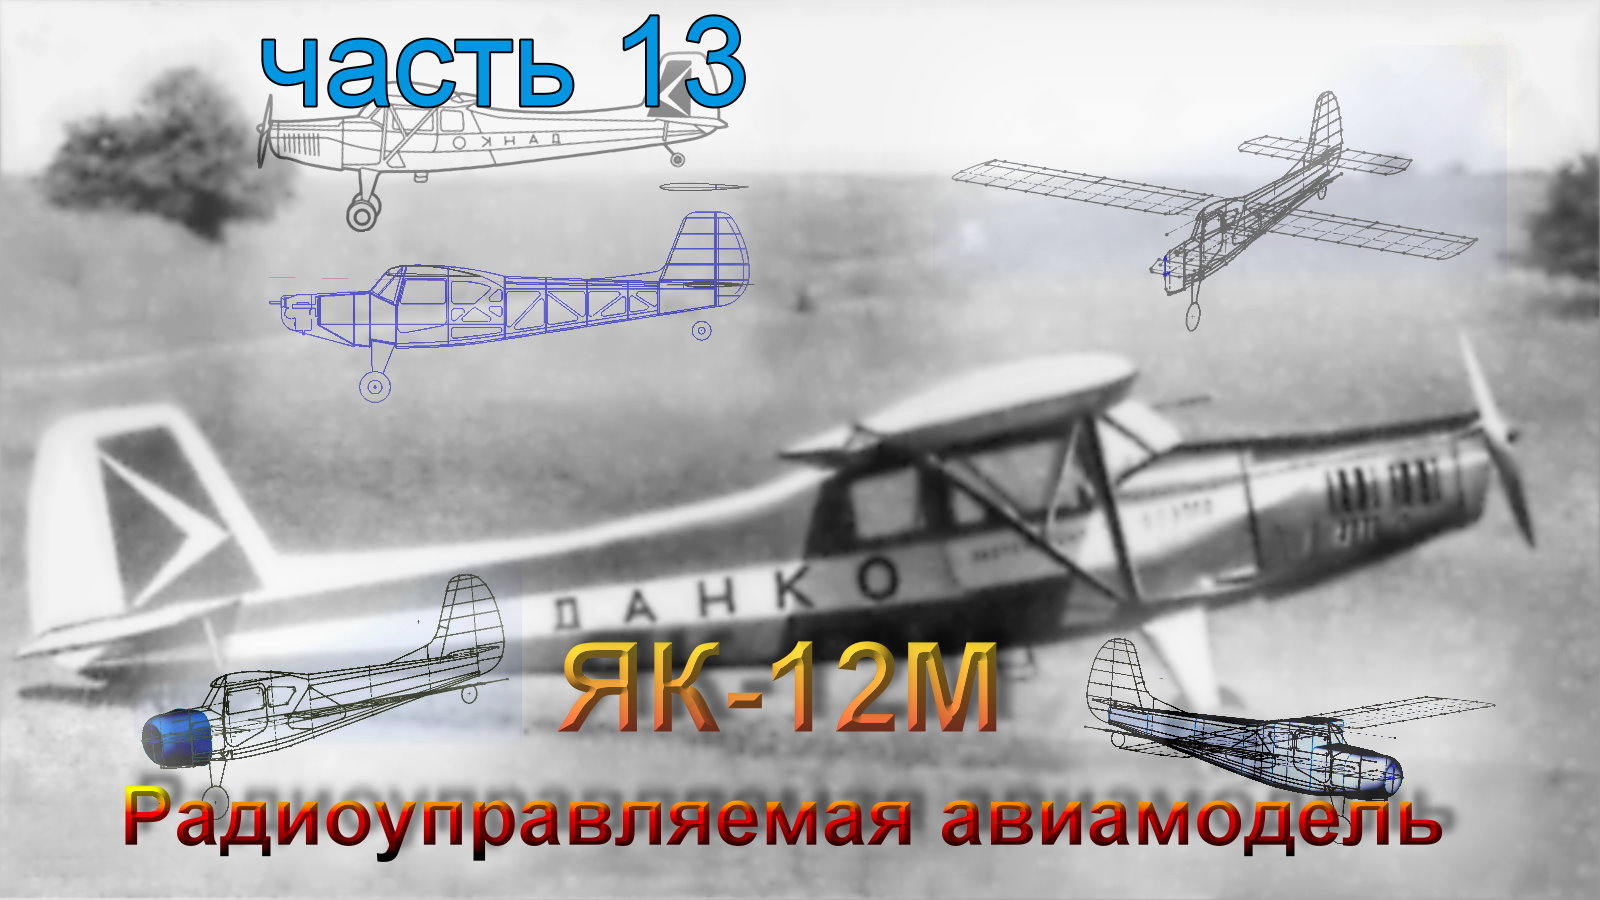 Радиоуправляемая модель самолета ЯК-12М (часть 13)